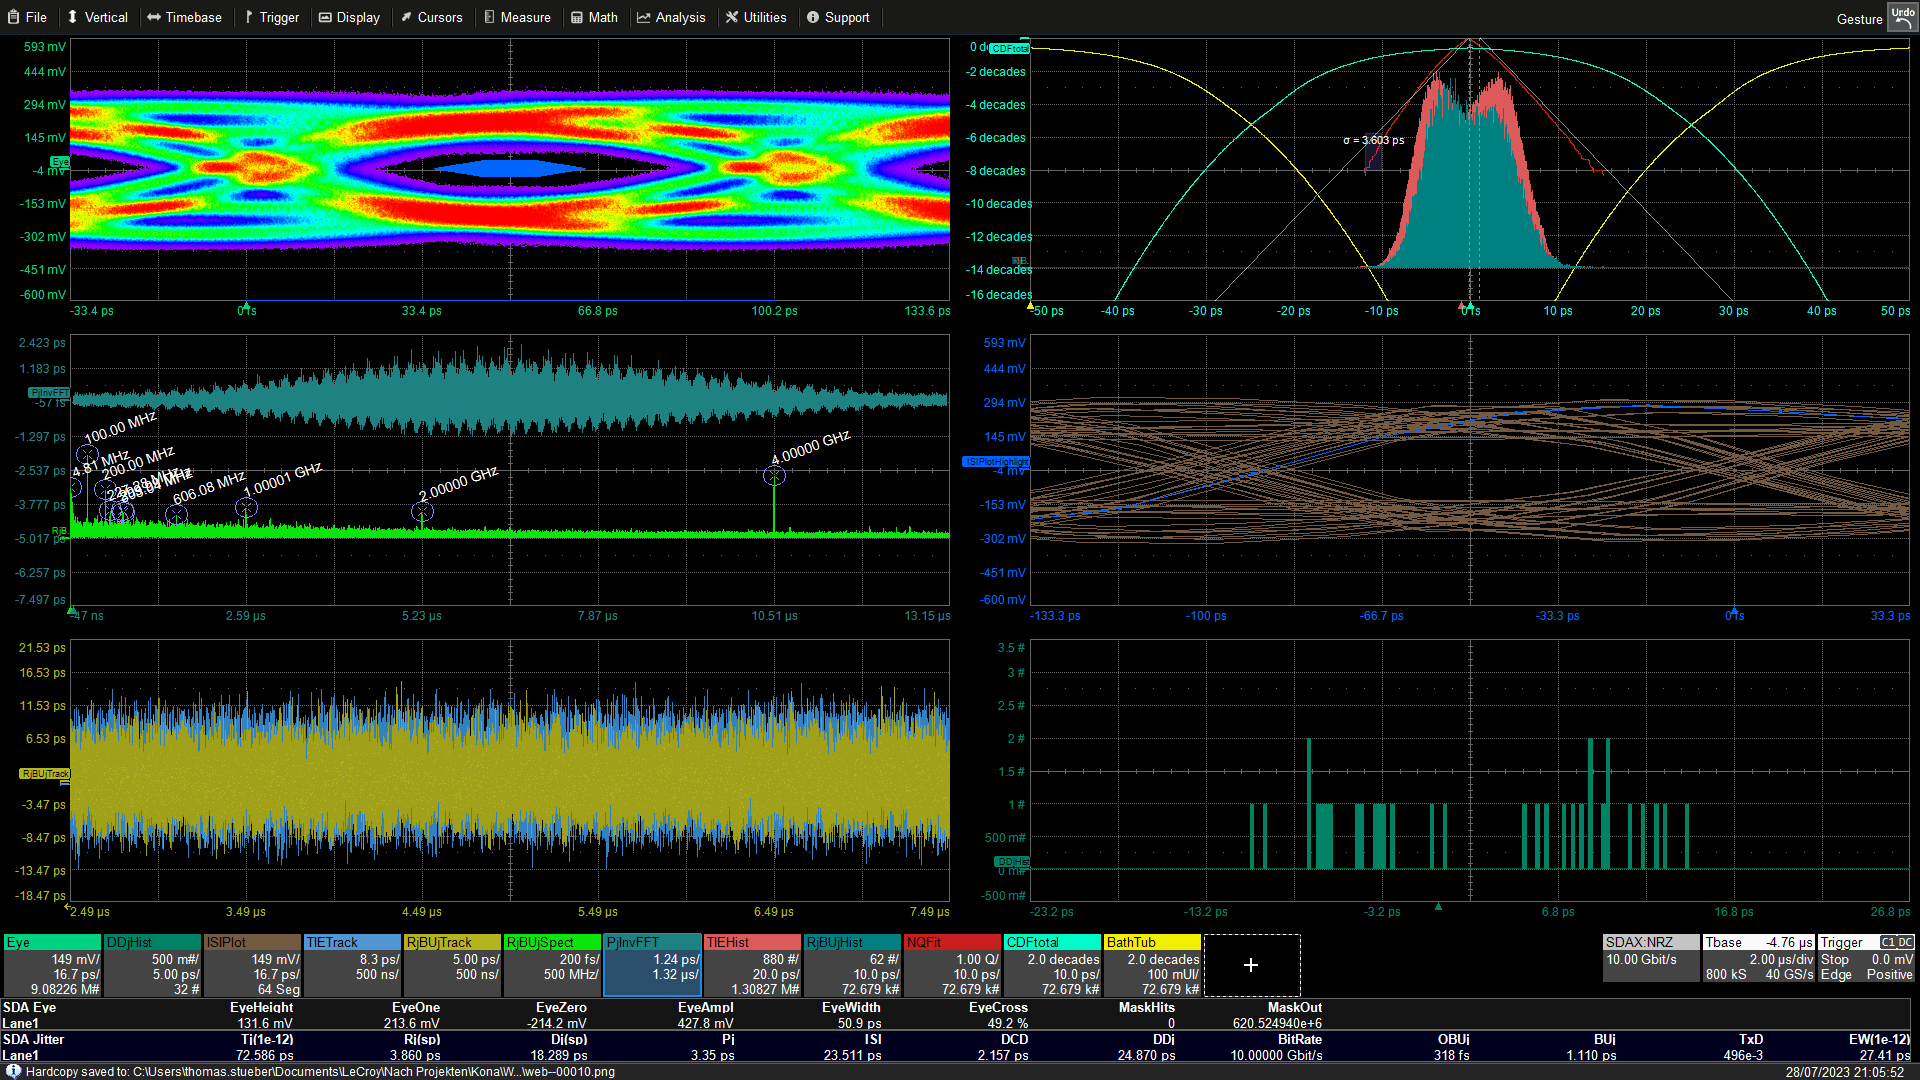 SDA Expert NRZ 眼图、抖动直方图、抖动轨迹、抖动 FFT 和随机、确定性抖动以及眼图参数